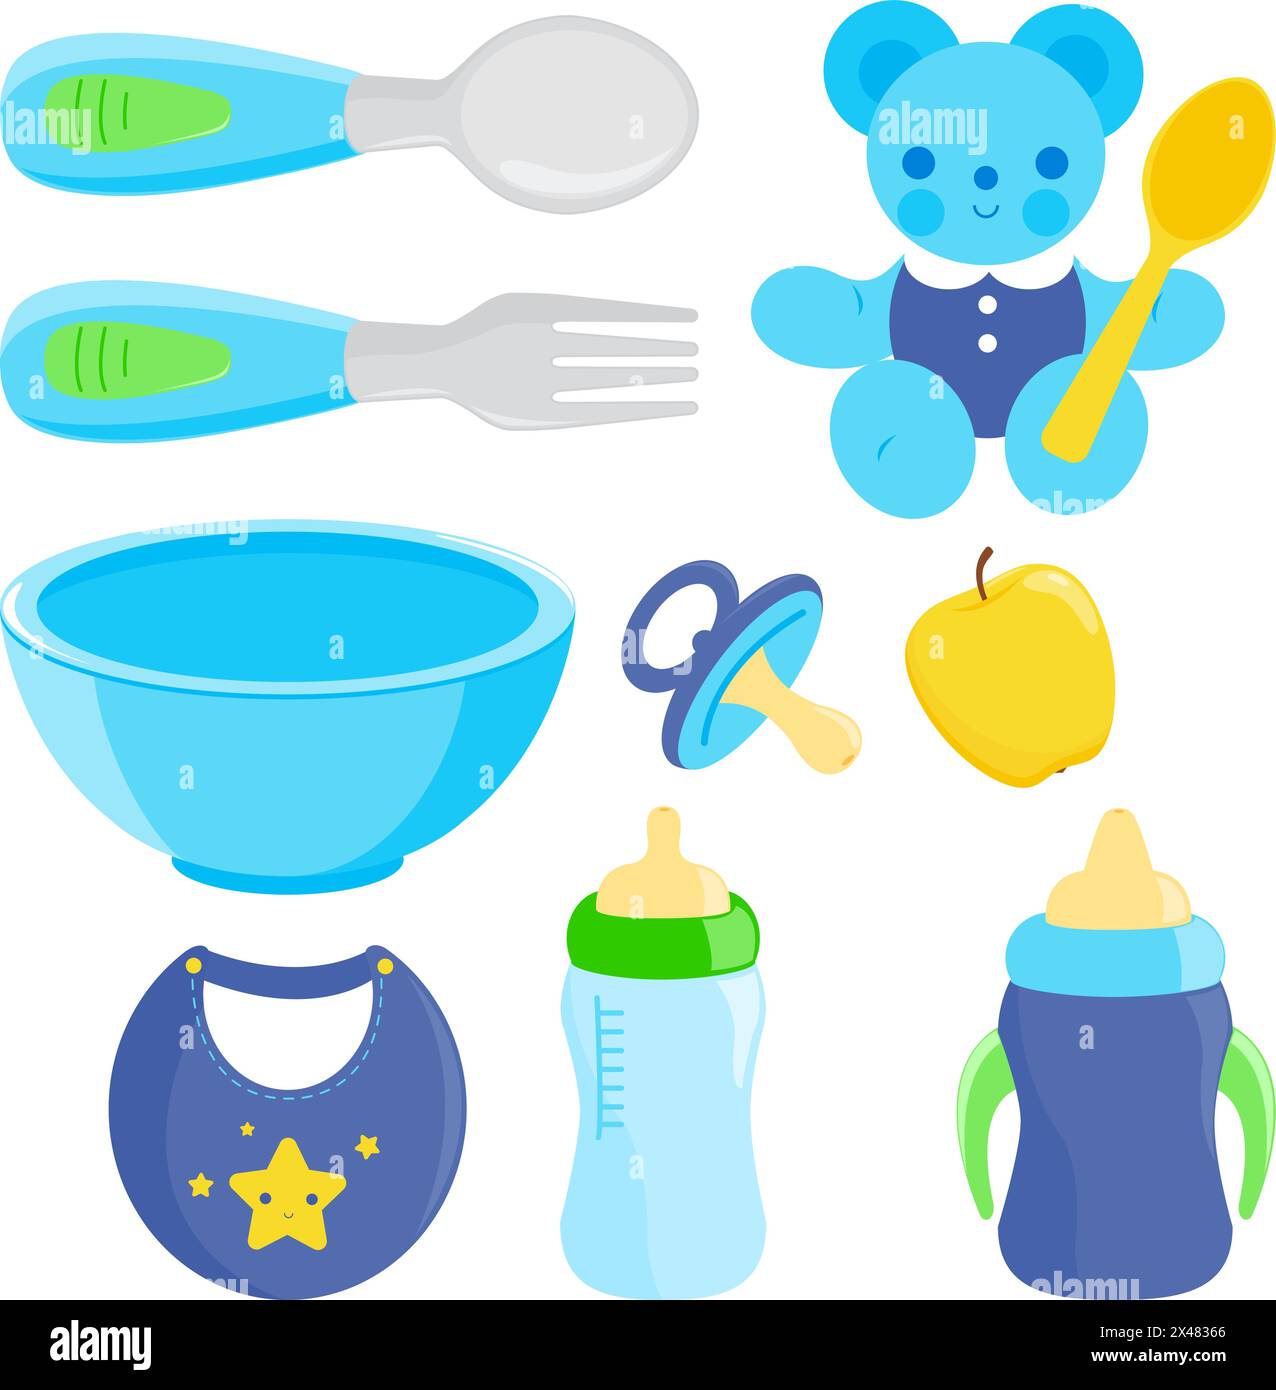 Ensemble d'ustensiles pour aliments pour bébés. Cuillère et fourchette pour bébés, ensemble de vaisselle avec biberons de lait. Collection d'illustrations vectorielles Illustration de Vecteur